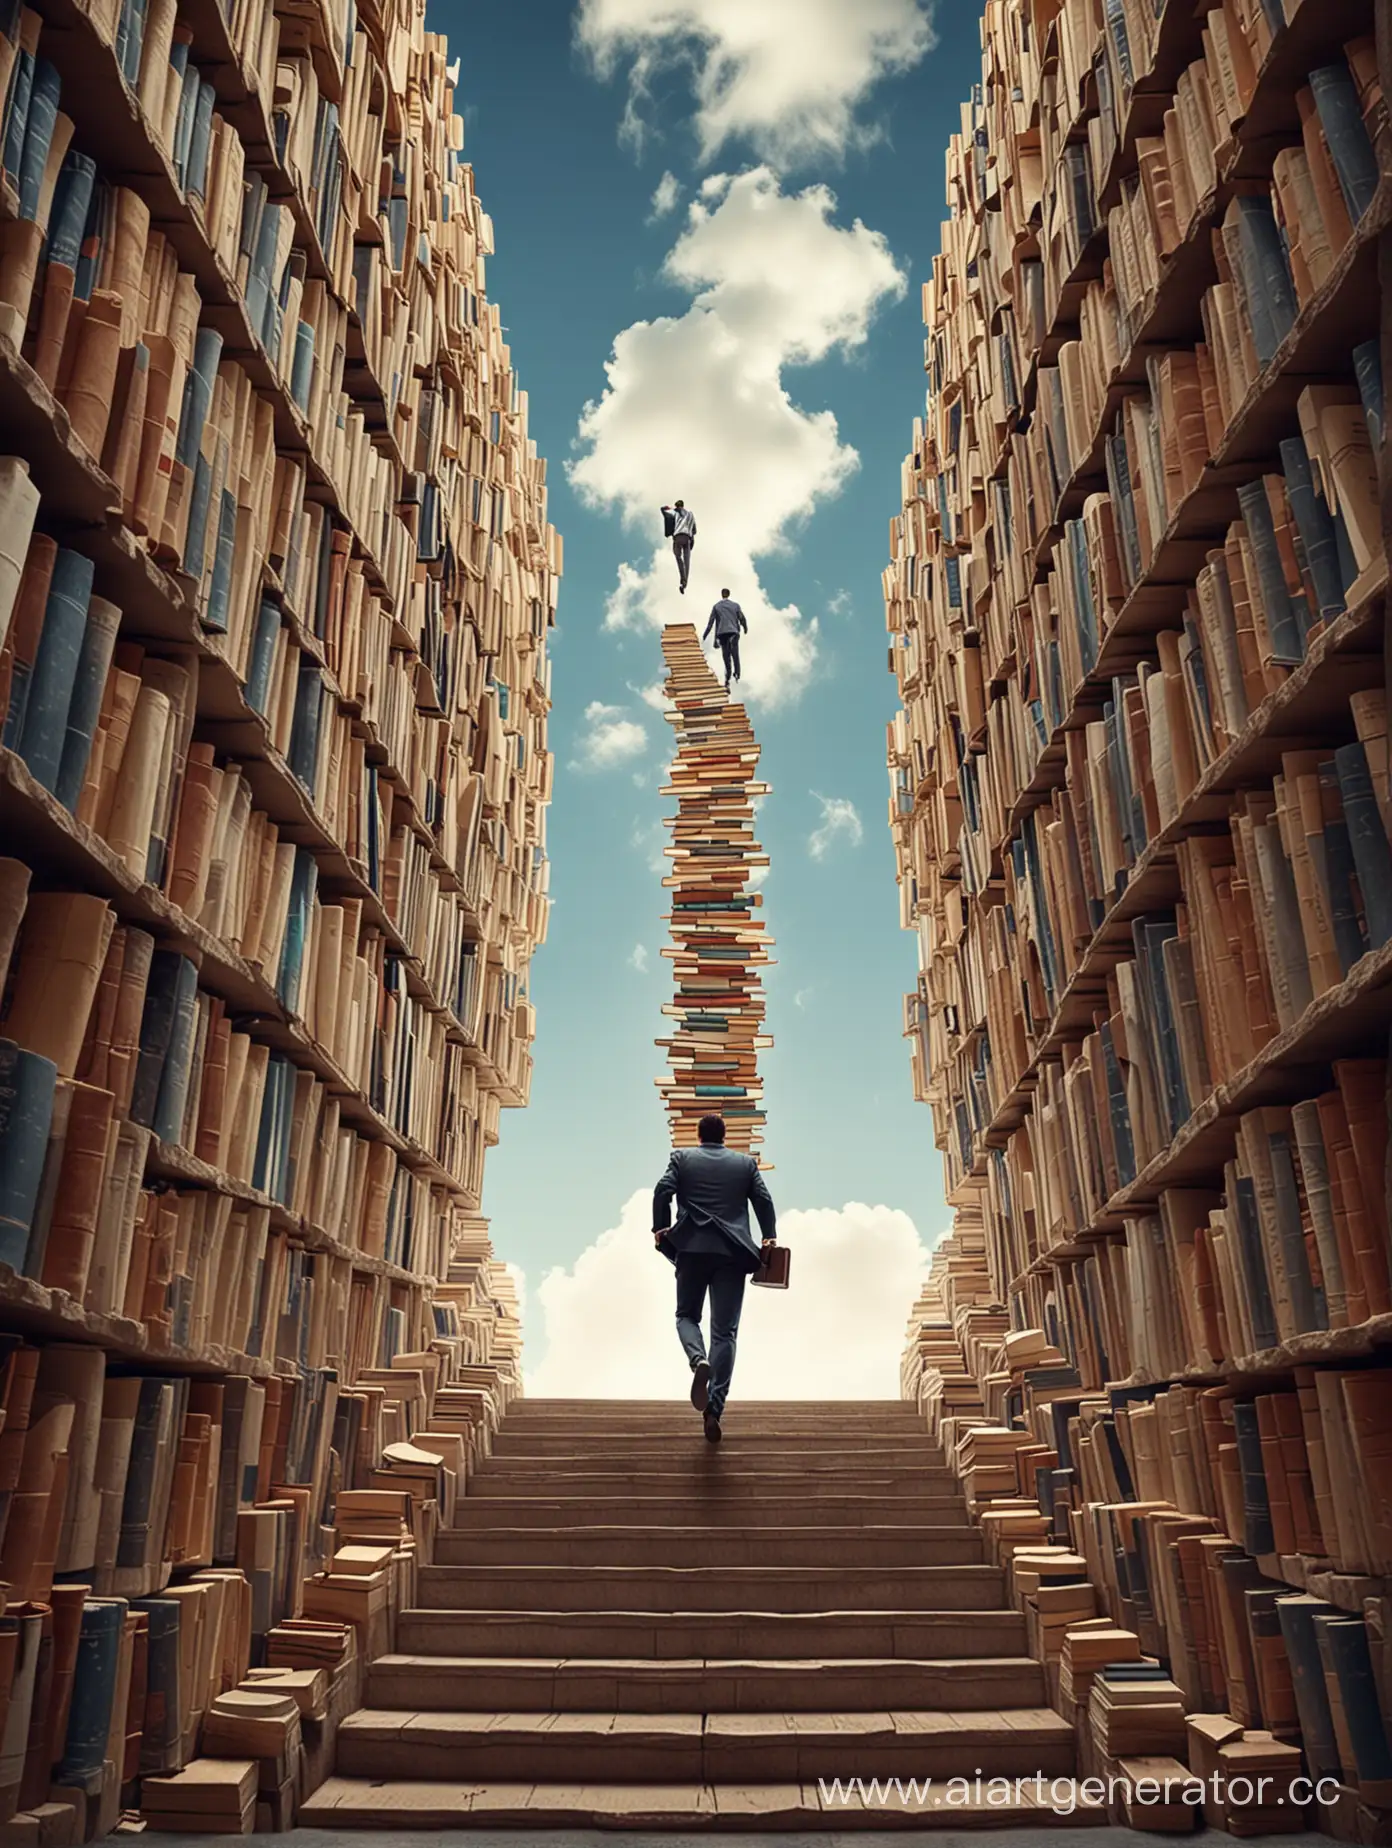 бизнесмен поднимается вверх к небу по лестнице из книг а вокруг бизнес-центры